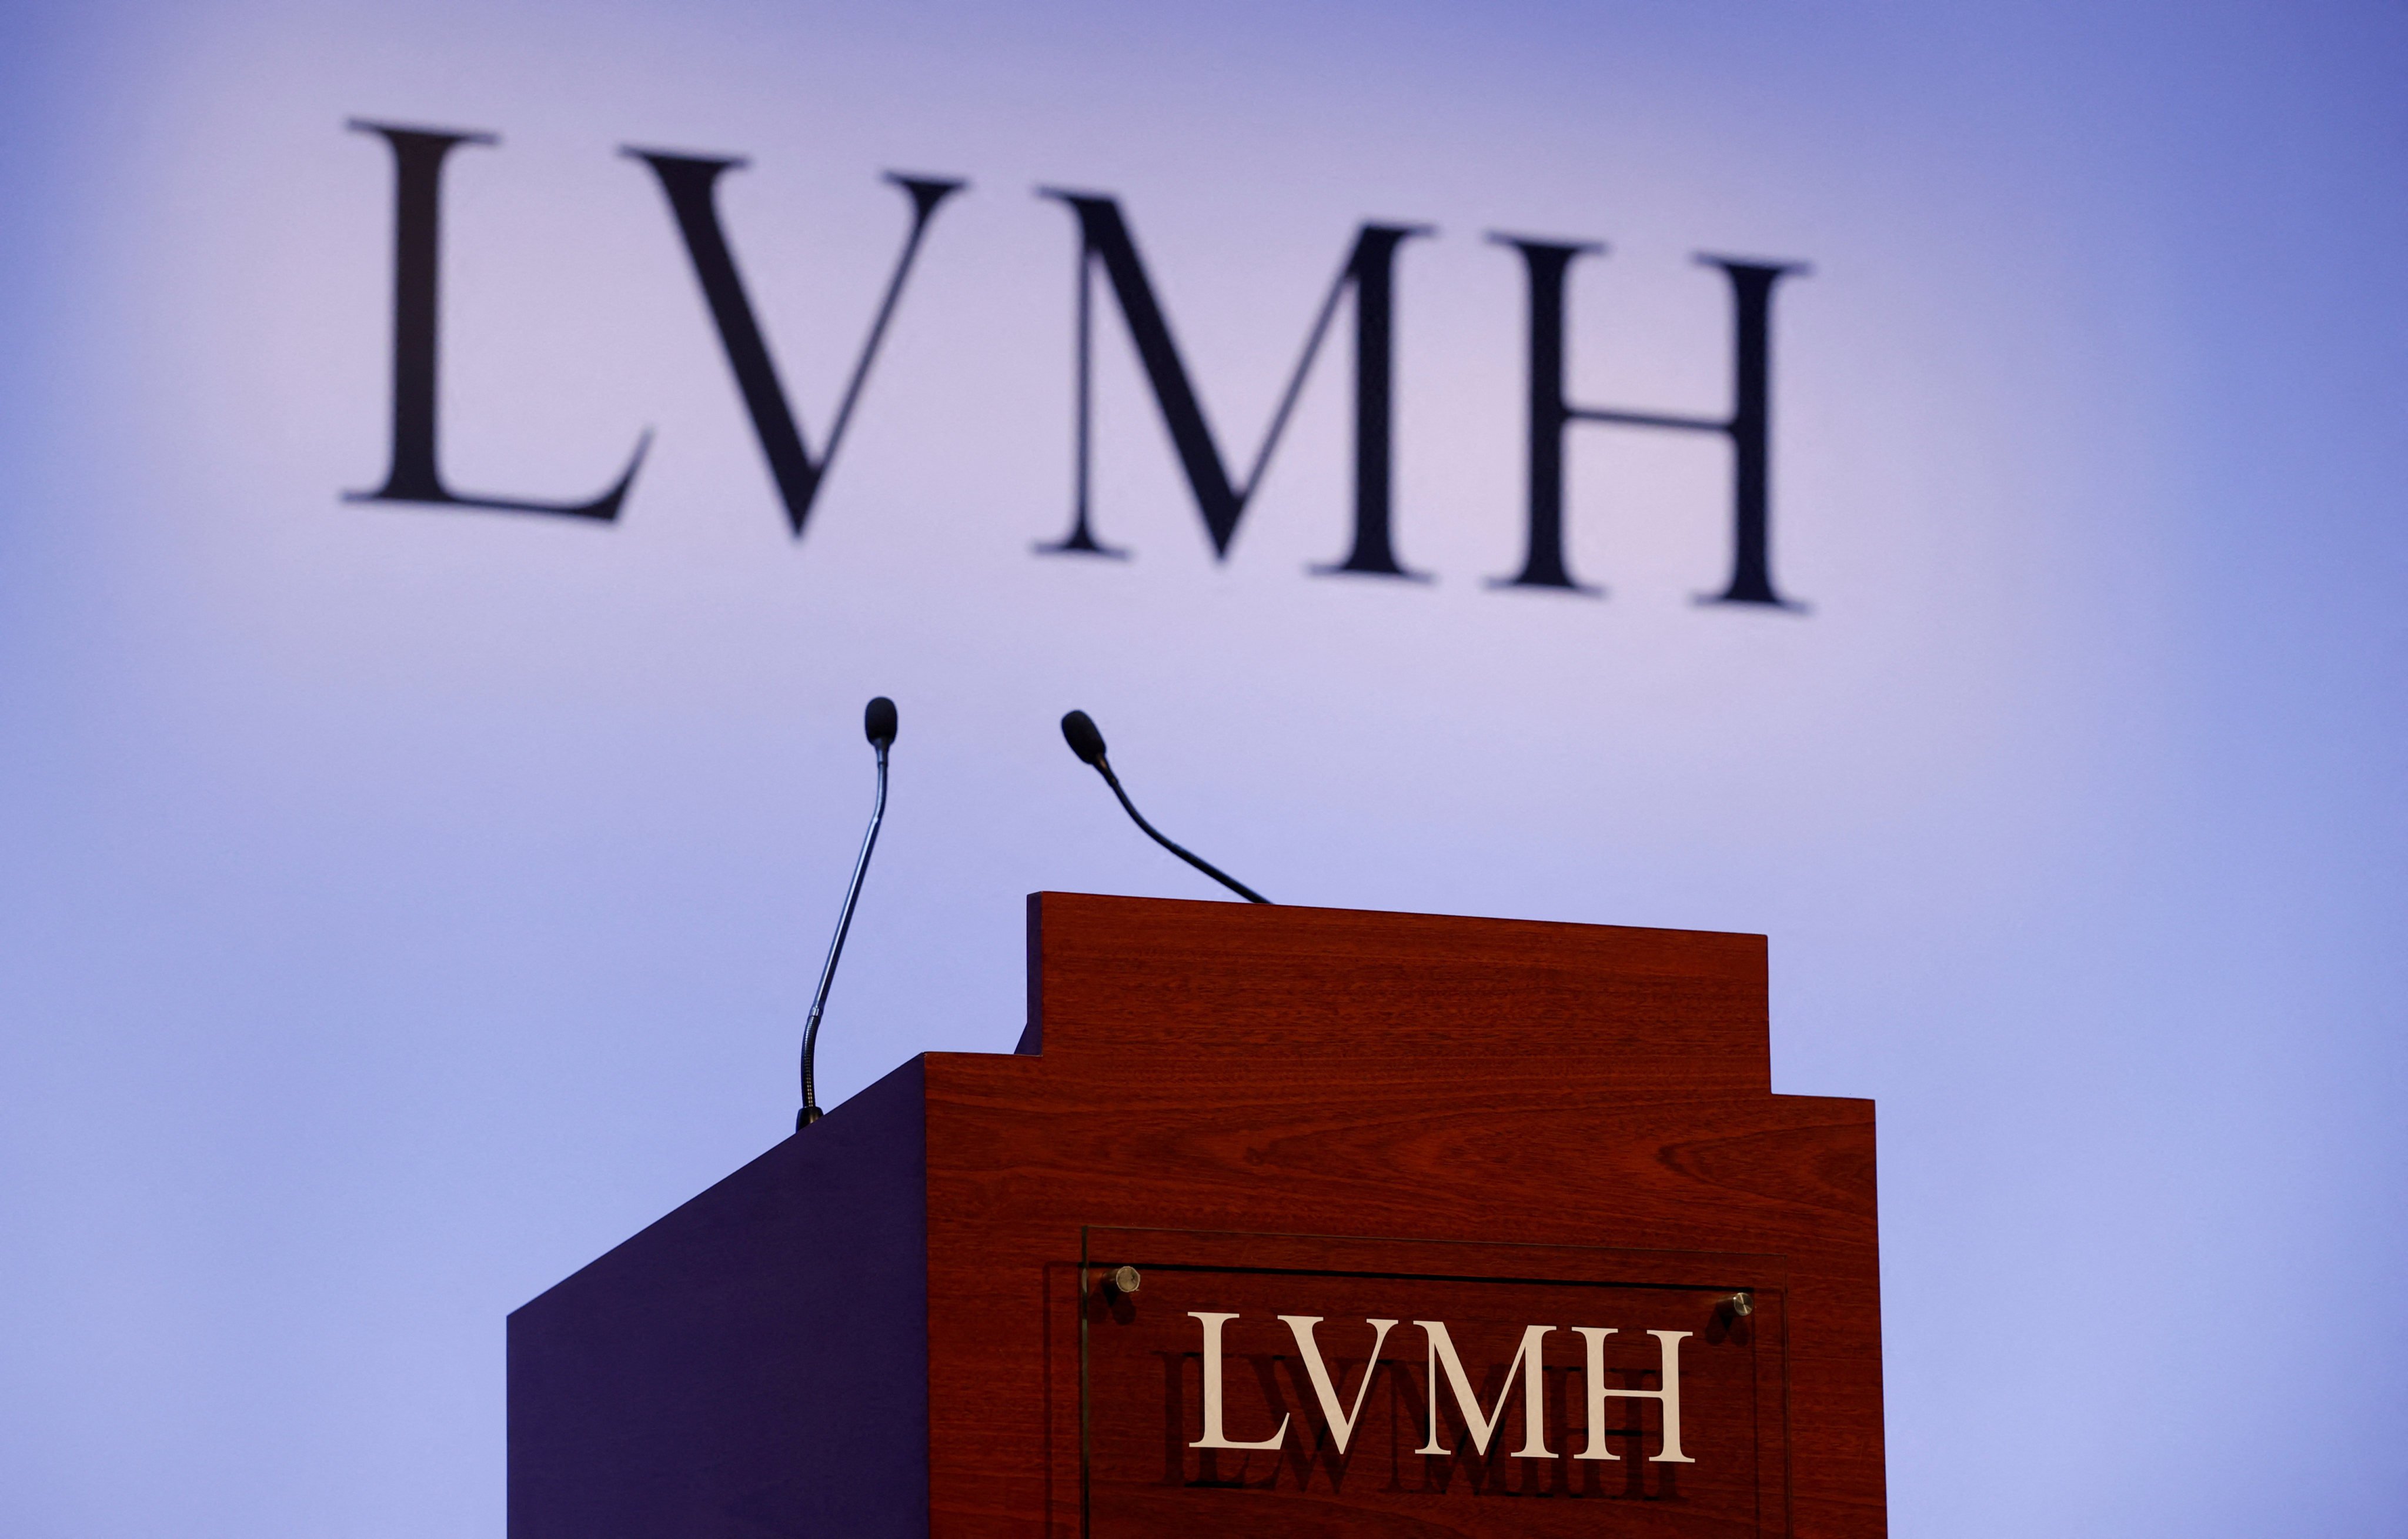 How did LVMH's market value exceed US$500 billion? Bernard Arnault